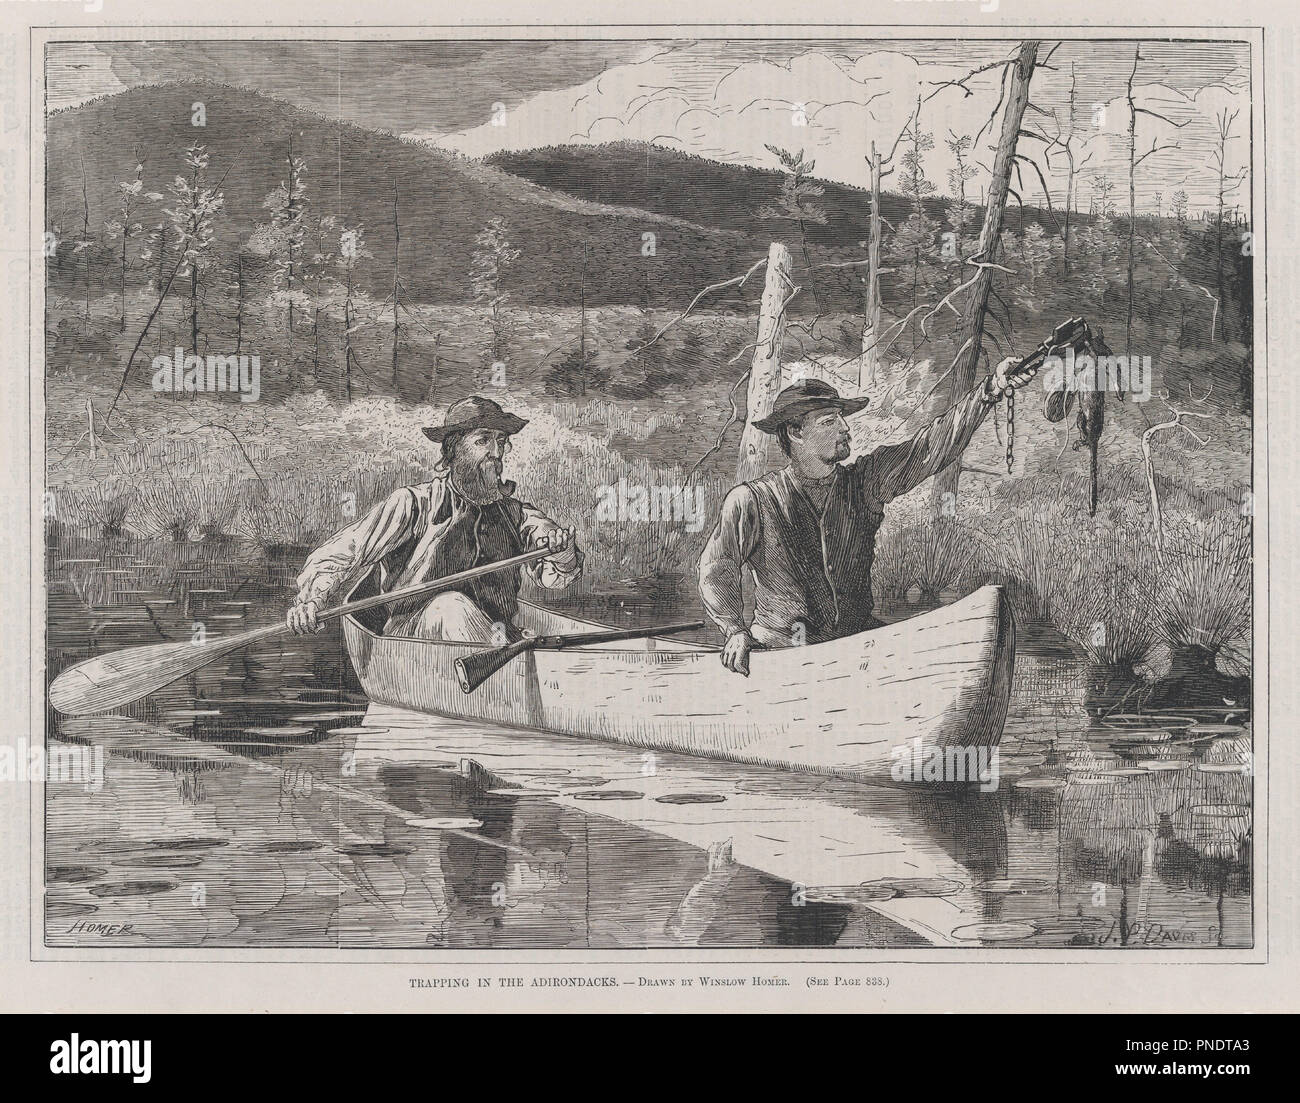 Cattura nella Adirondacks - Disegnato da Winslow Homer (ogni sabato, Vol. Ho, nuova serie). Progettista: Winslow Homer (American, Boston, Massachusetts 1836-1910 Prouts collo, Maine). Dimensioni: Immagine: 8 7/8 x 11 5/8 in. (22,5 x 29,5 cm) Blocco: 9 1/8 x 12 1/16 in. (23,2 x 30,6 cm) foglio: 10 9/16 x 14 1/2 in. (26,9 x 36,8 cm). Incisore: John Parker Davis (American, attivo 1867-82). Data: 24 ottobre 1870. Museo: Metropolitan Museum of Art di New York, Stati Uniti d'America. Foto Stock